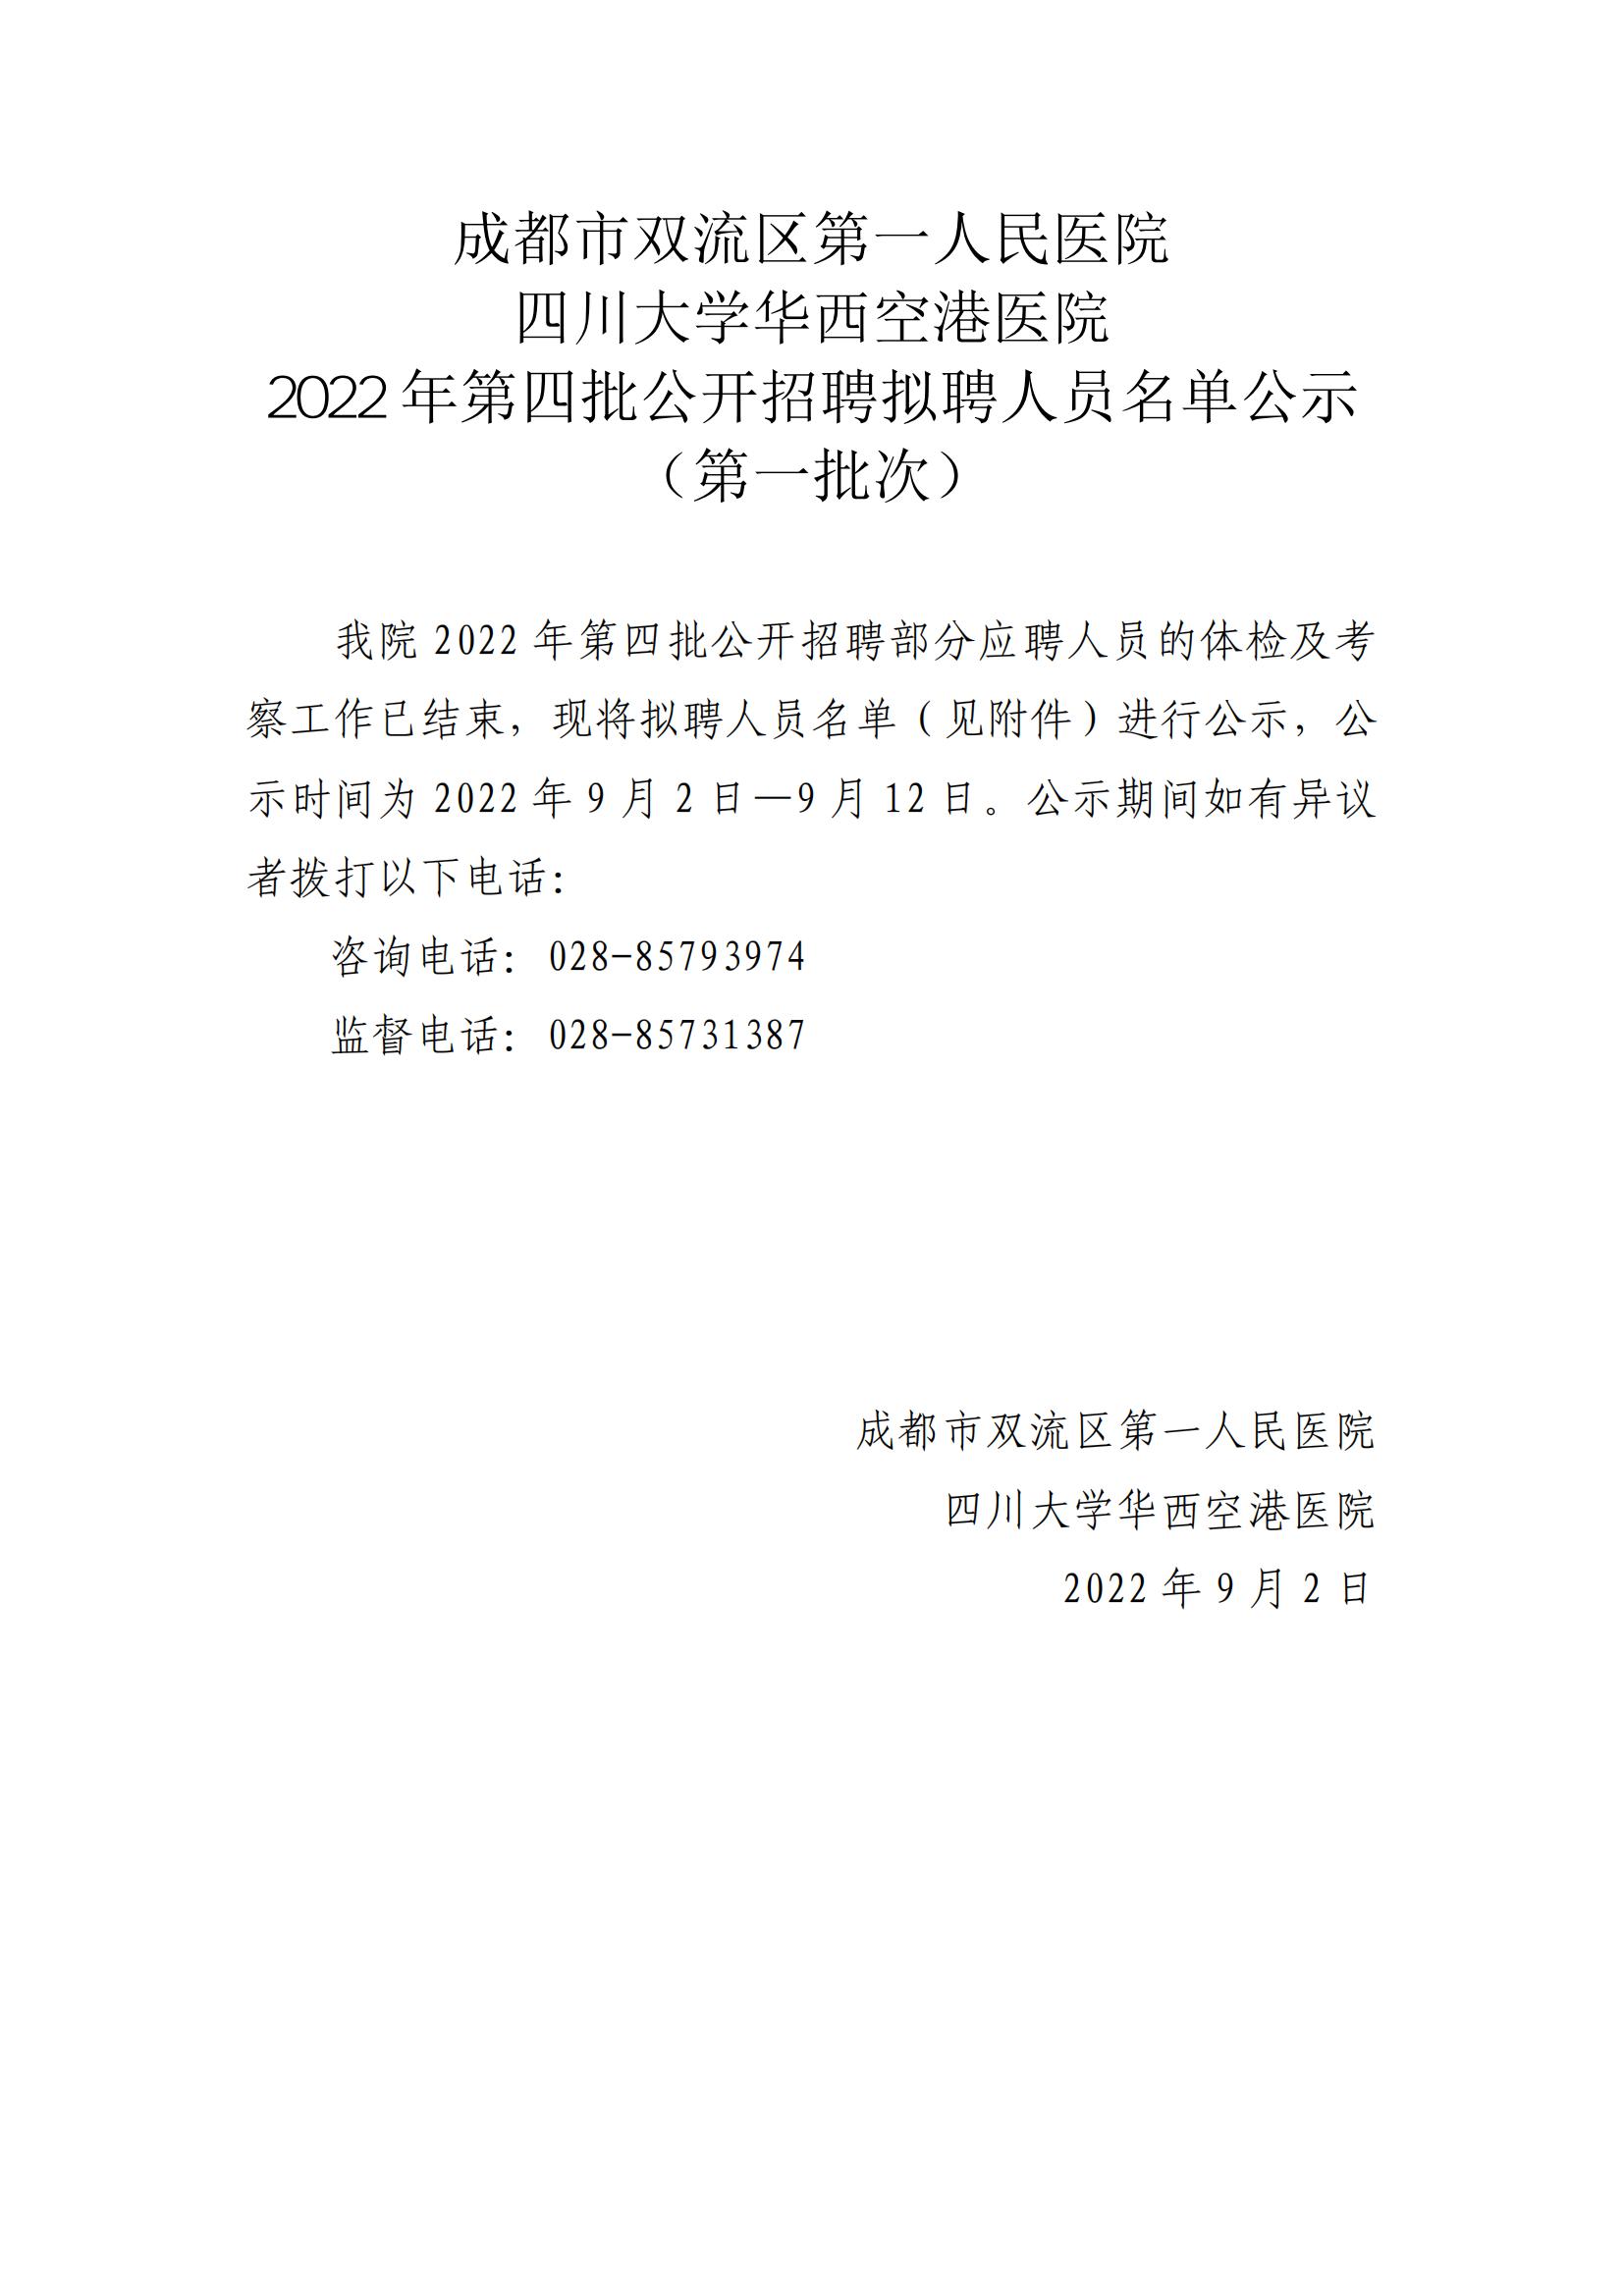 2022年第四批拟聘人员名单公示（第一批次）_00